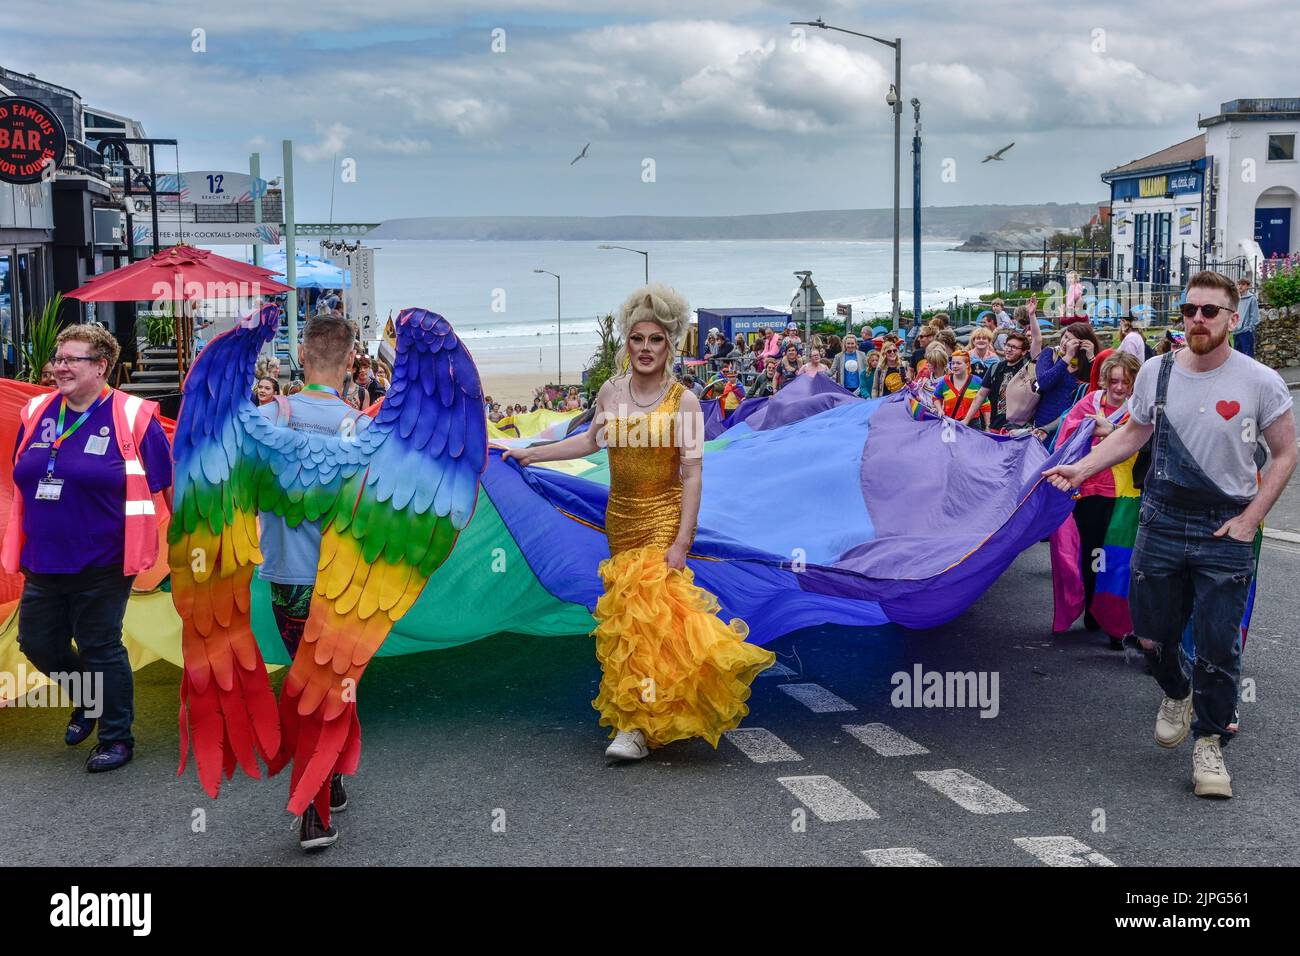 L'immense bannière colorée et animée portée par les participants au défilé de la fierté des prides de Cornwall dans le centre-ville de Newquay, au Royaume-Uni. Banque D'Images